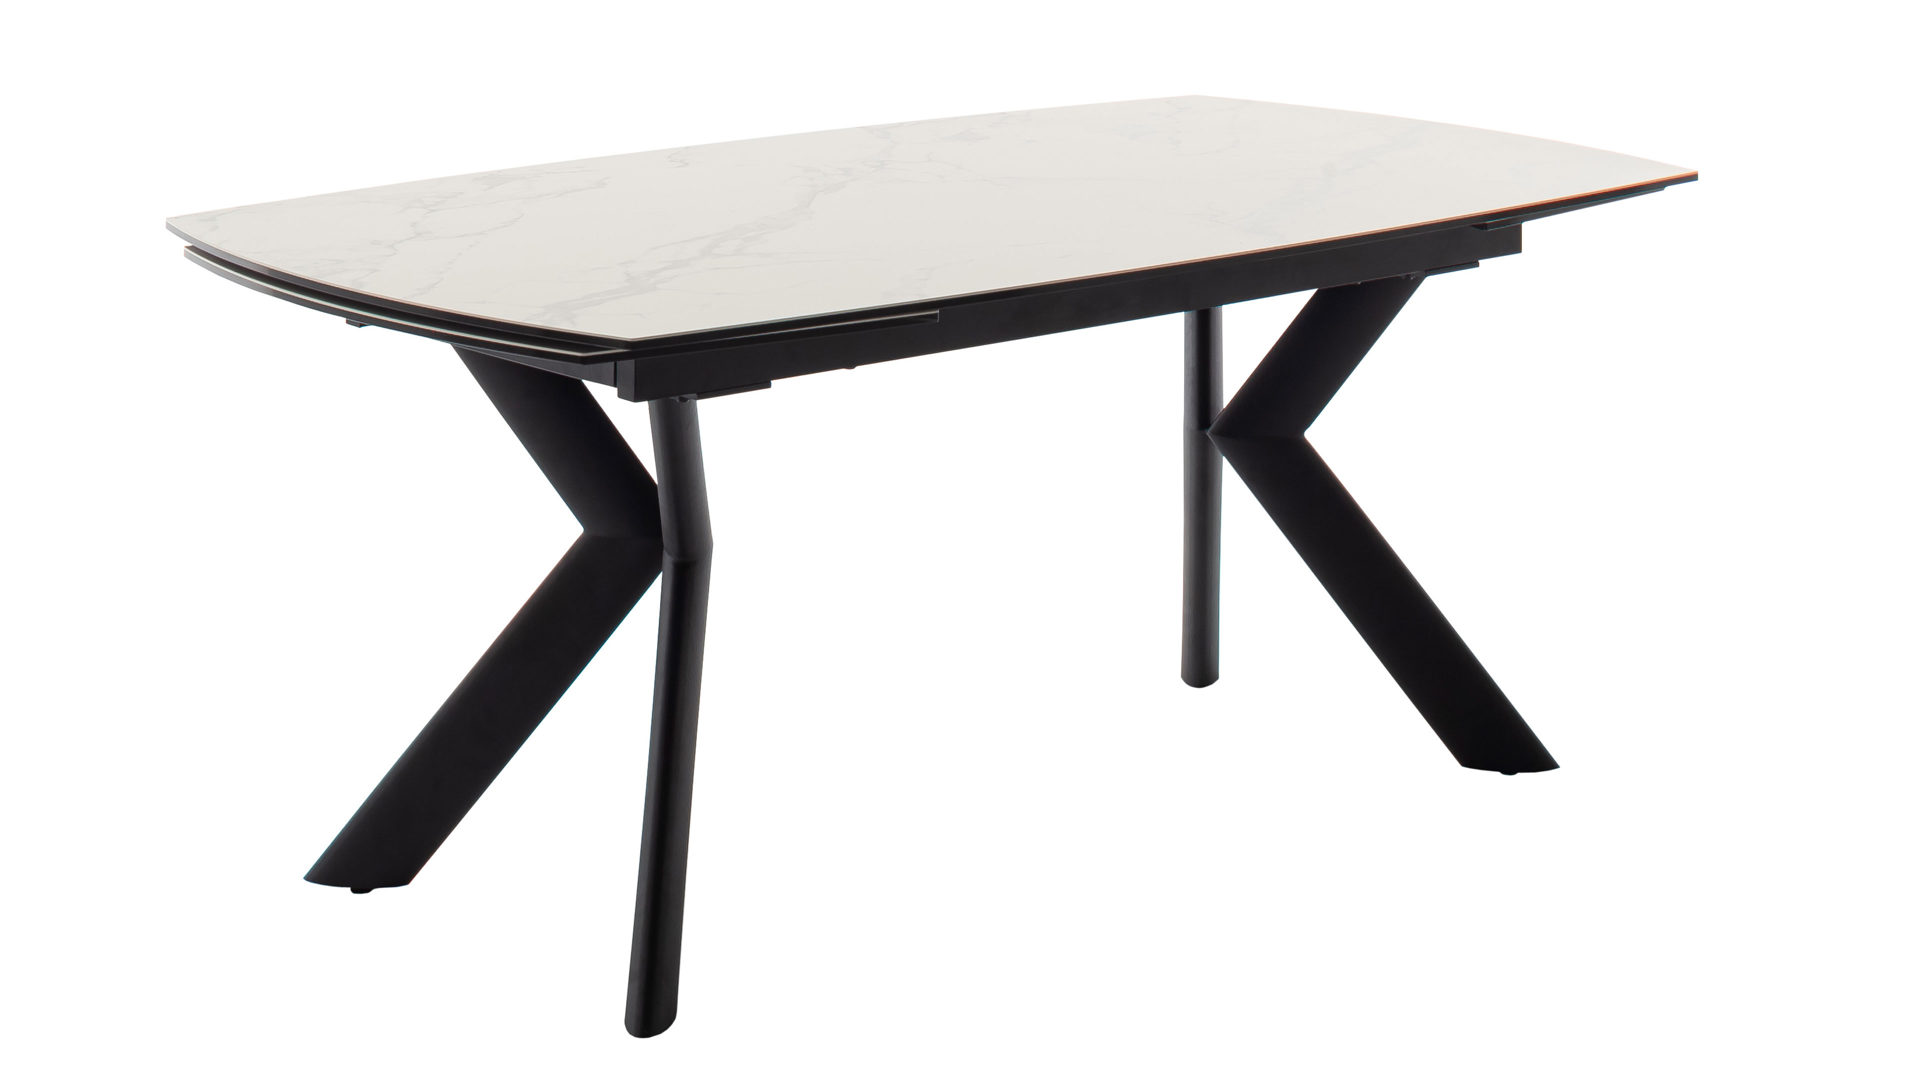 Auszugtisch Mca furniture aus Keramik in Weiß Auszugtisch cremefarben & Schwarz – ca. 180(260) x 100 cm